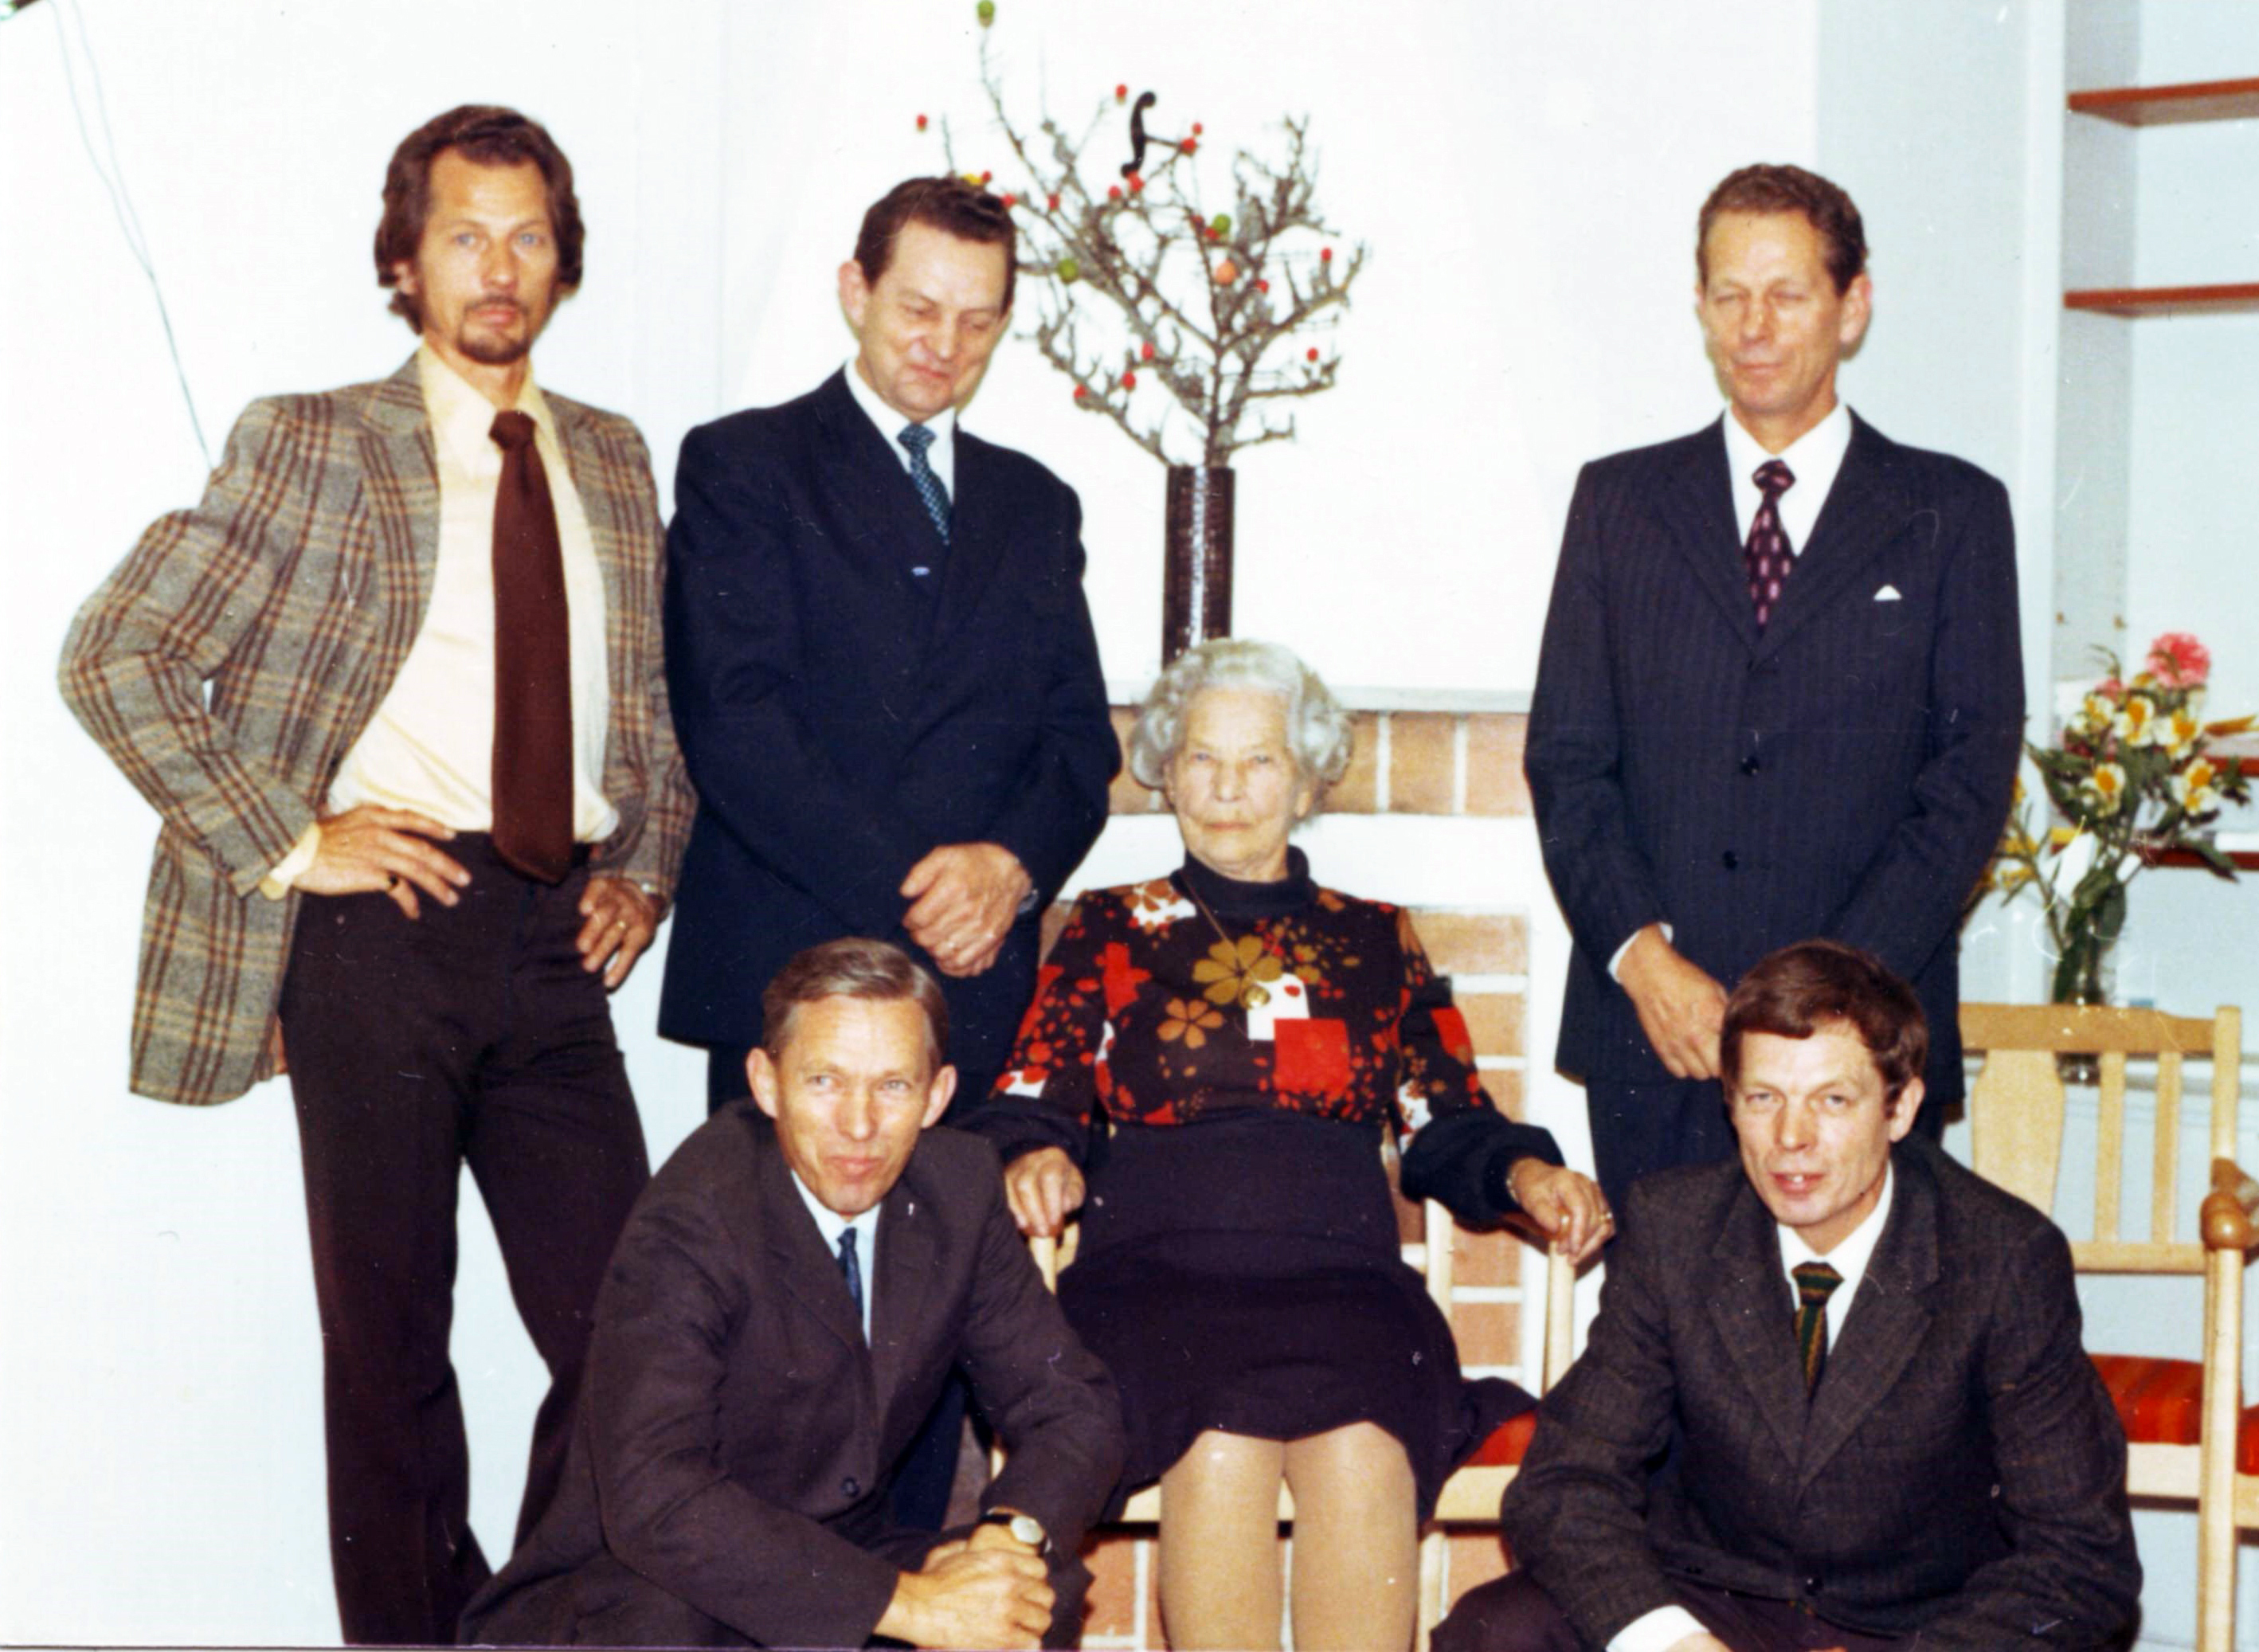 Nisse,Gösta,Åke Folke,Bengt Amanda 1973